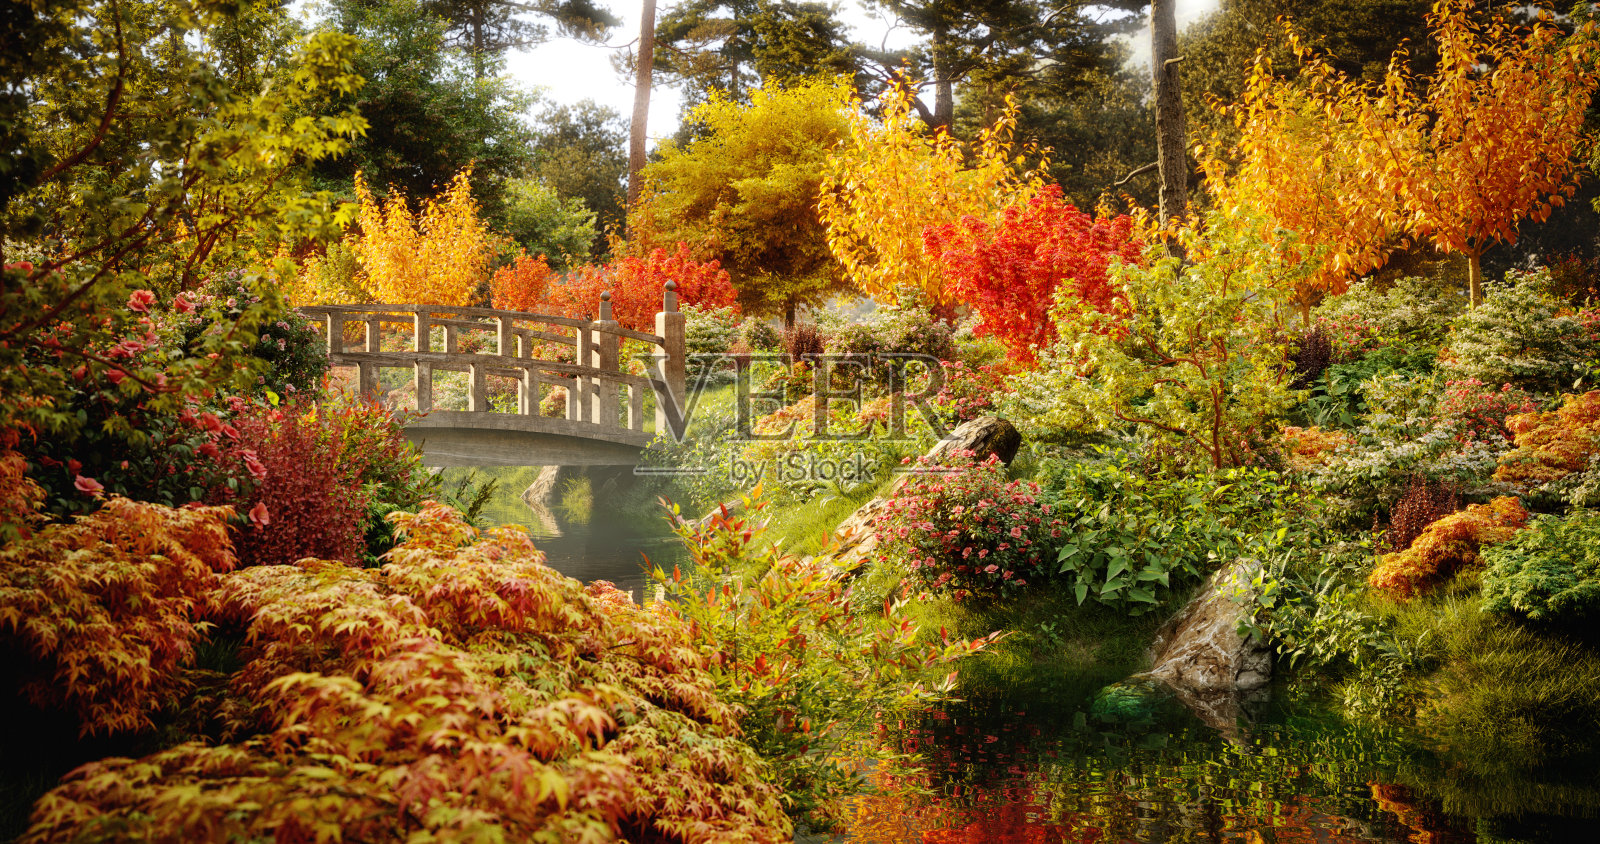 田园诗般的秋天的风景照片摄影图片